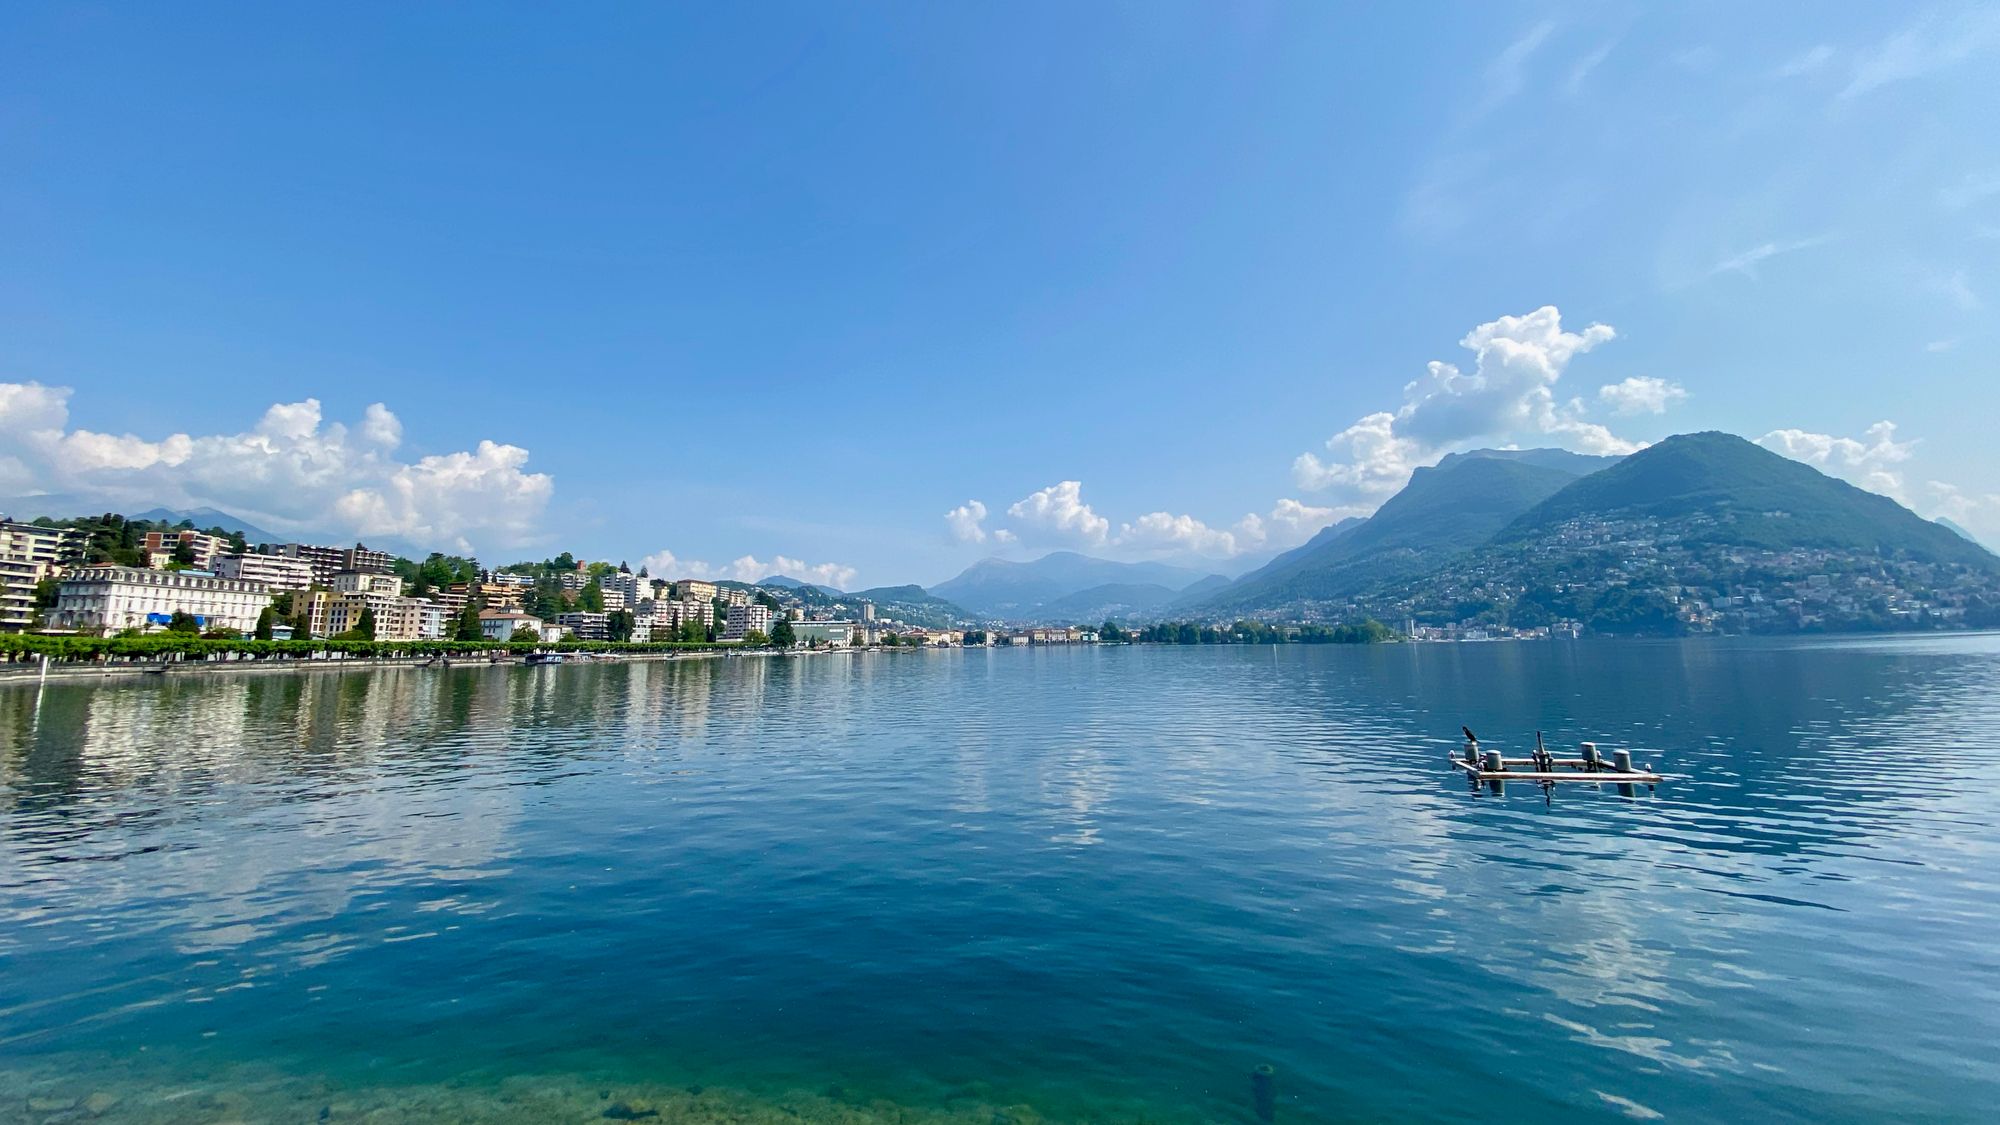 View of lake Lugano in Switzerland